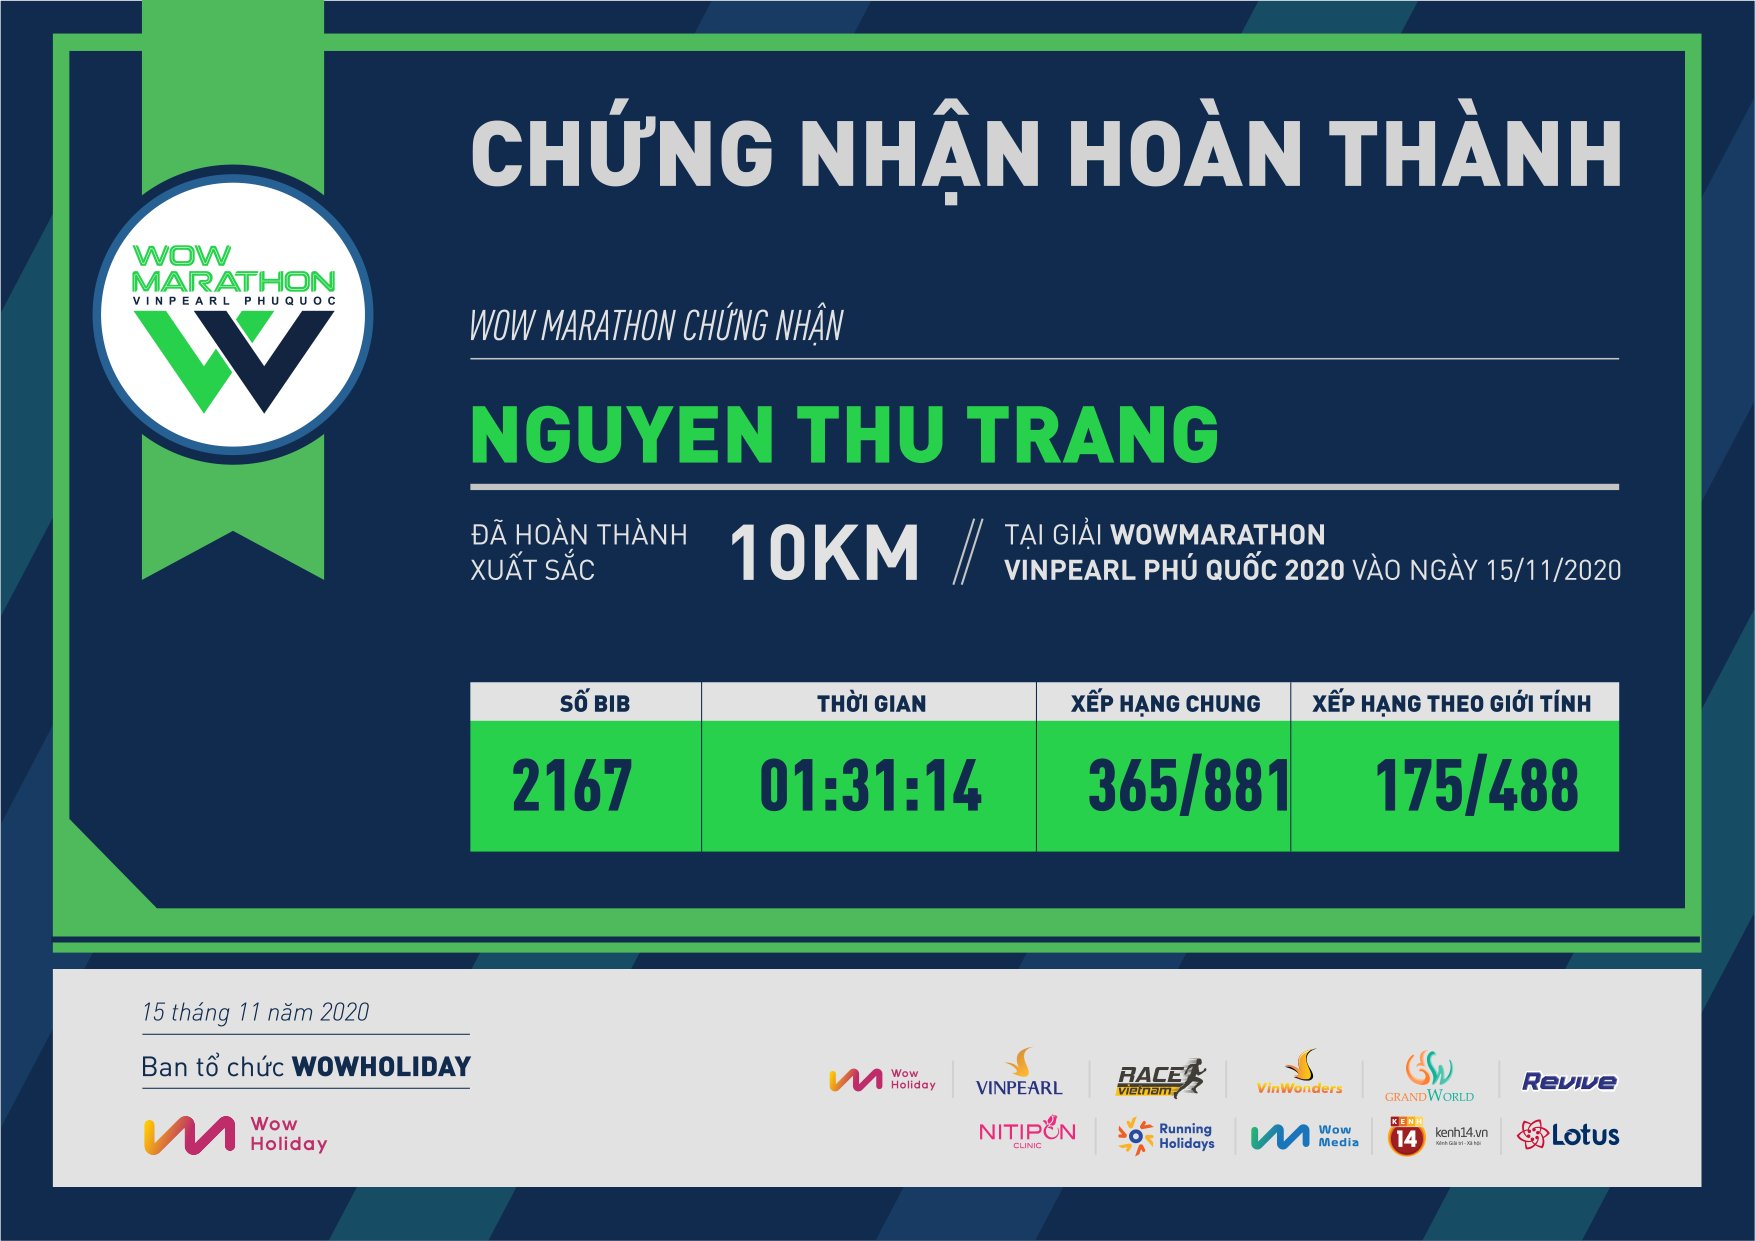 2167 - Nguyen Thu Trang